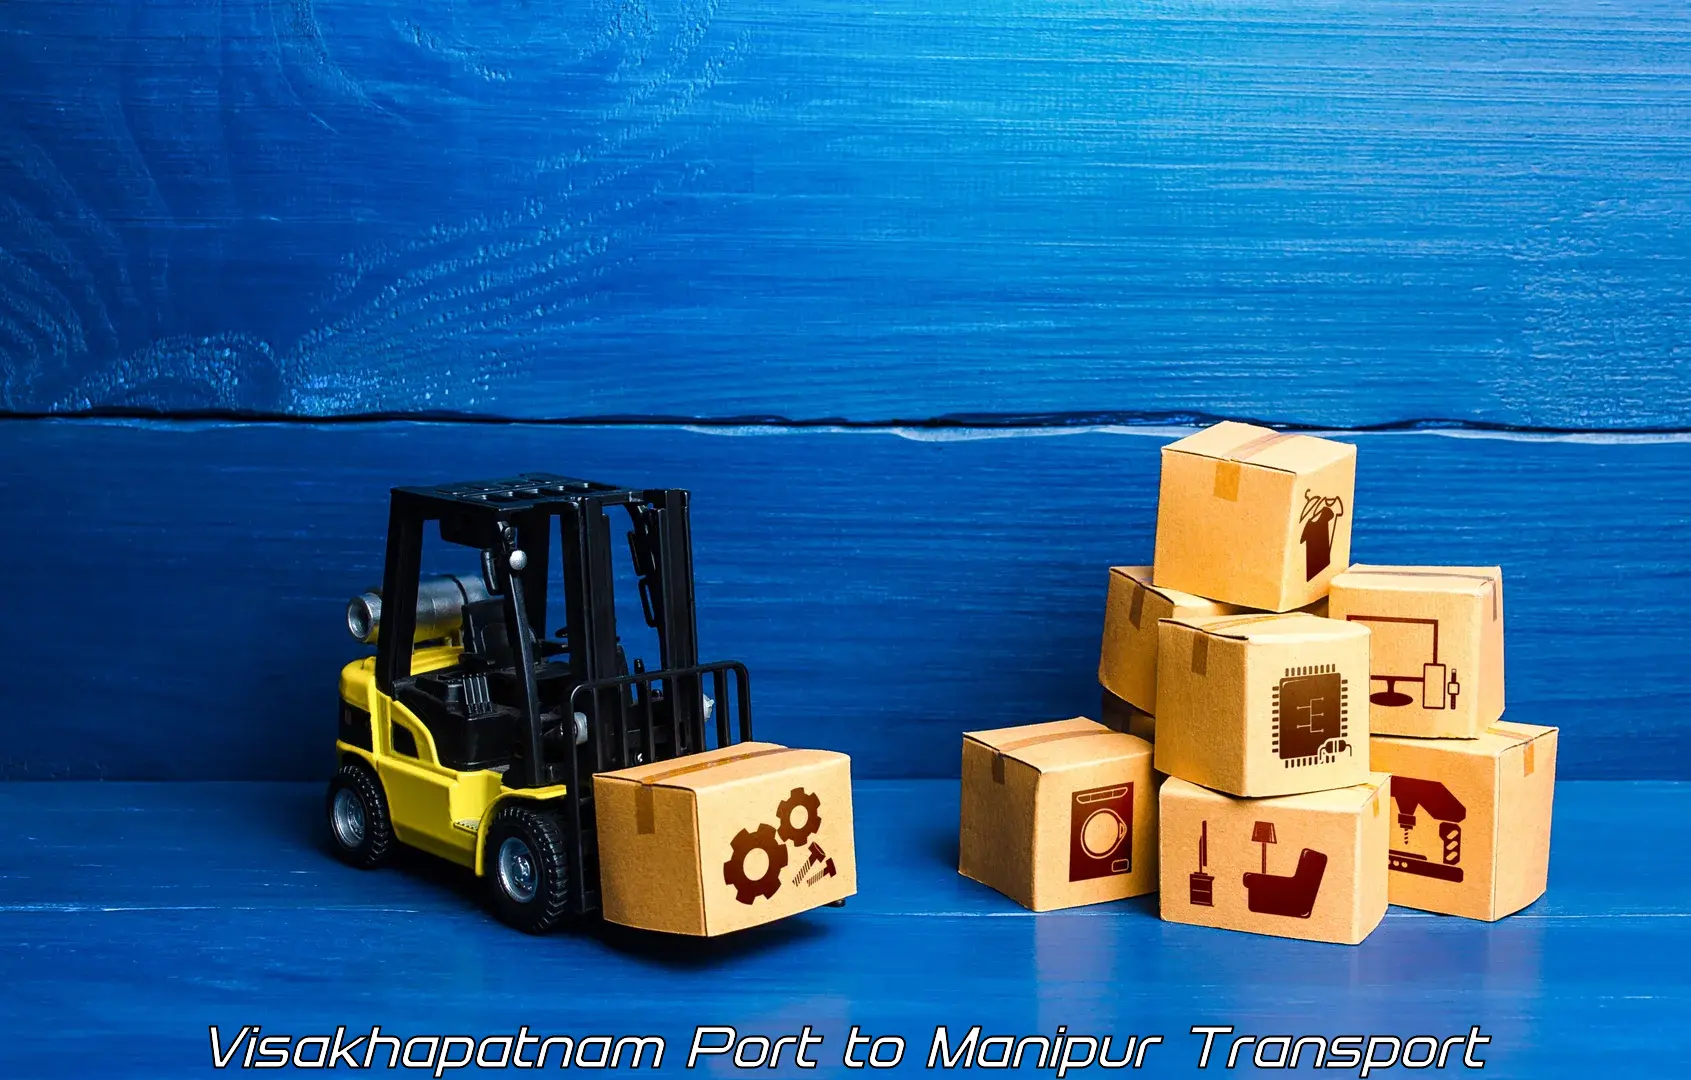 Commercial transport service Visakhapatnam Port to Chandel